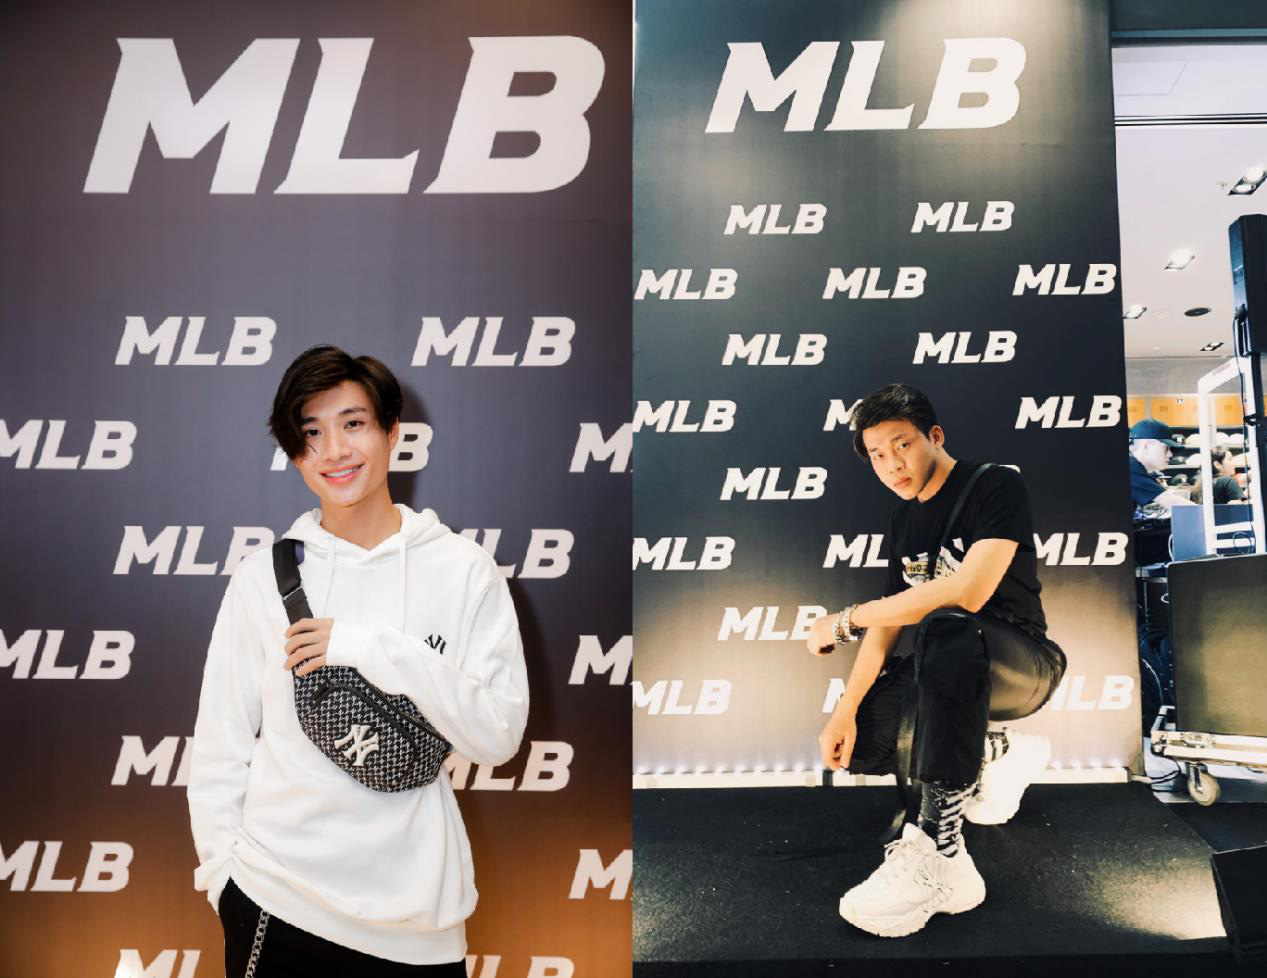 Osad, Lou Hoàng, Orange, Quỳnh Anh Shyn, Decao “đổ bộ” sự kiện của MLB - Ảnh 9.